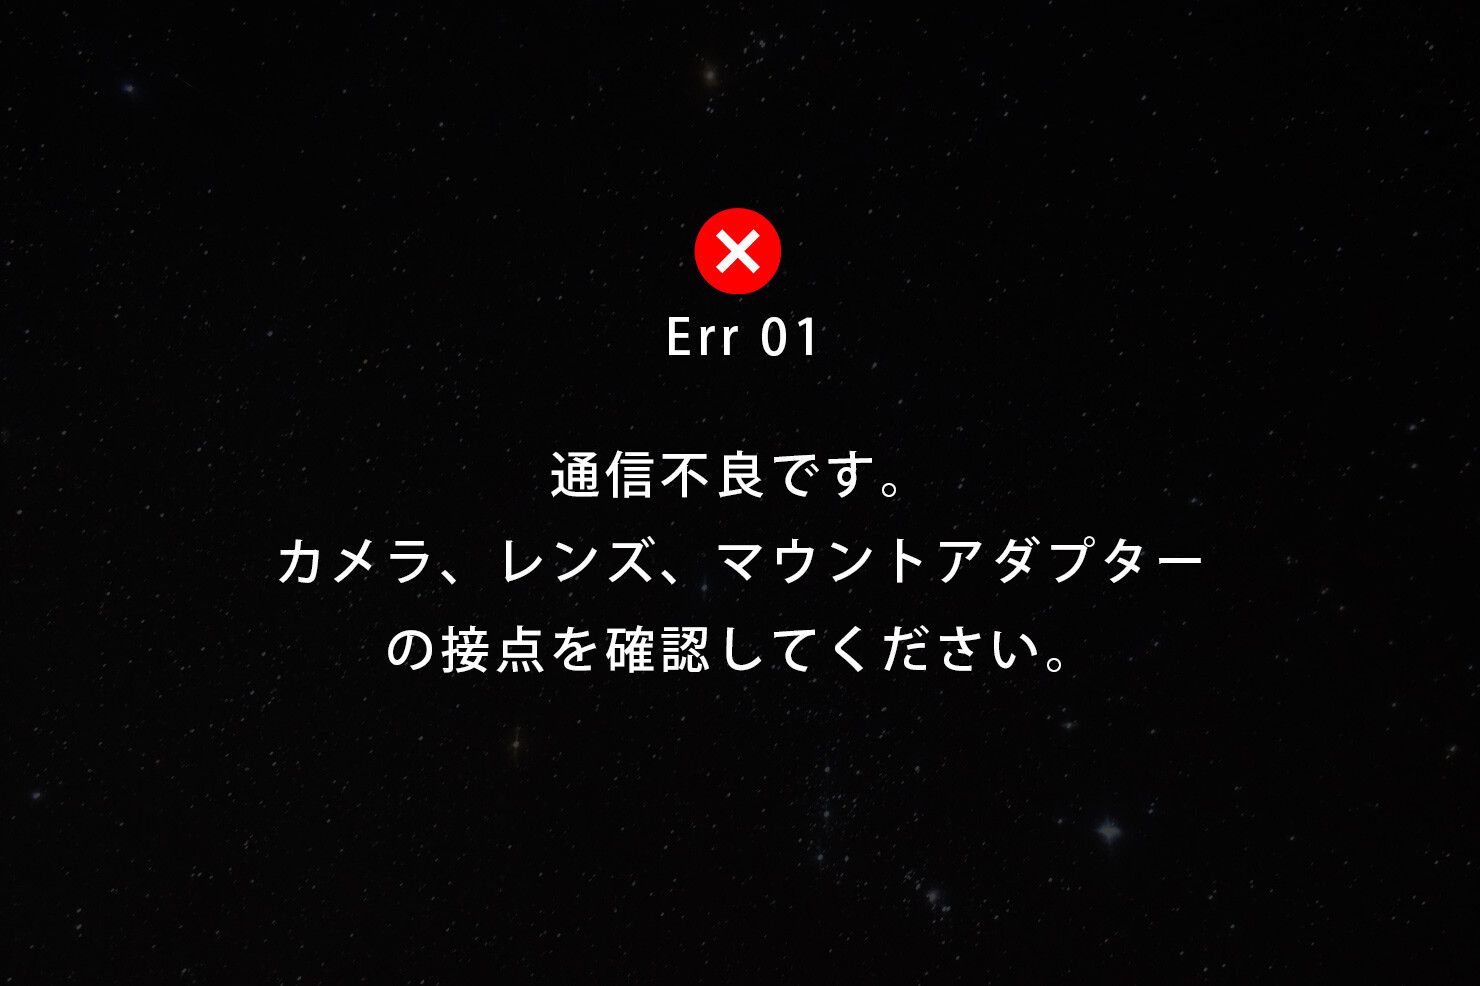 EOS「Err 01 通信不良です。カメラ、レンズ、マウントアダプターの接点を確認してください。」